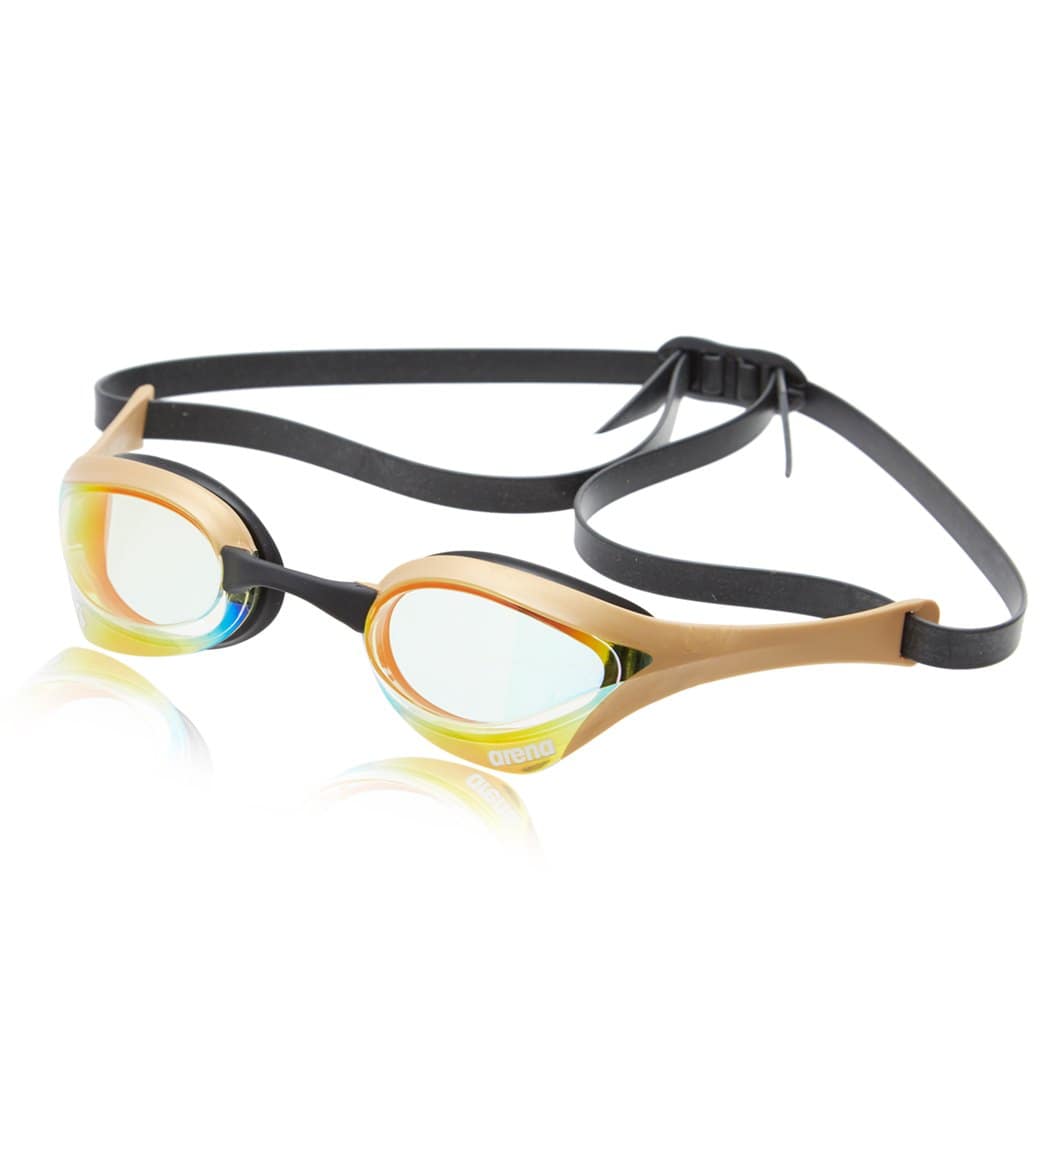 Arena Cobra Ultra Swipe Mirror Goggles Yellow Copper White for sale online